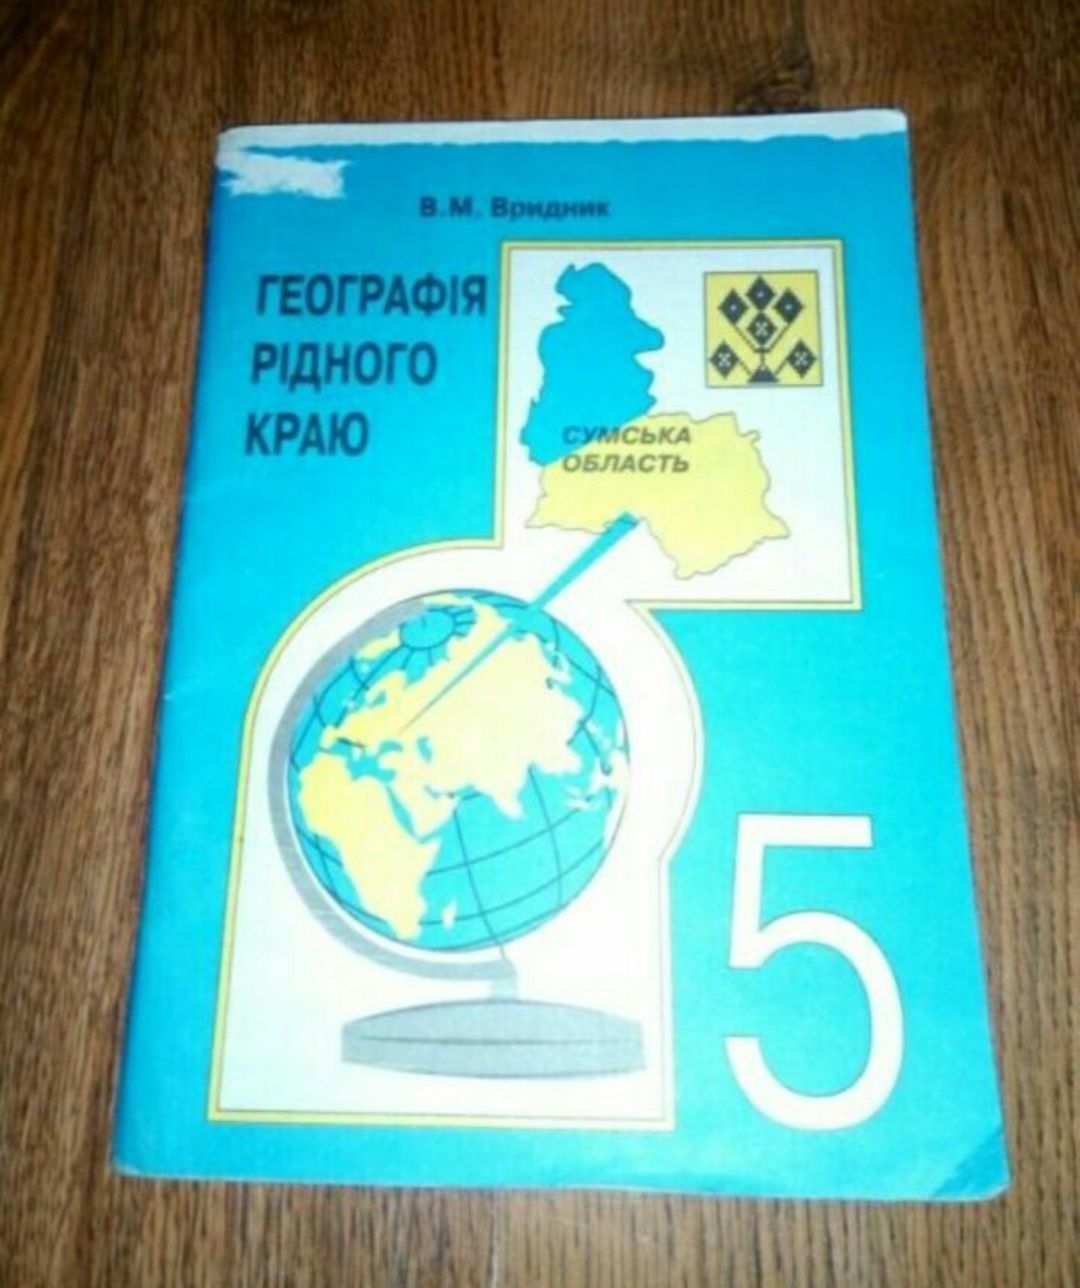 Підручник шкільна книга ''Географія рідного краю. Сумська обл.''